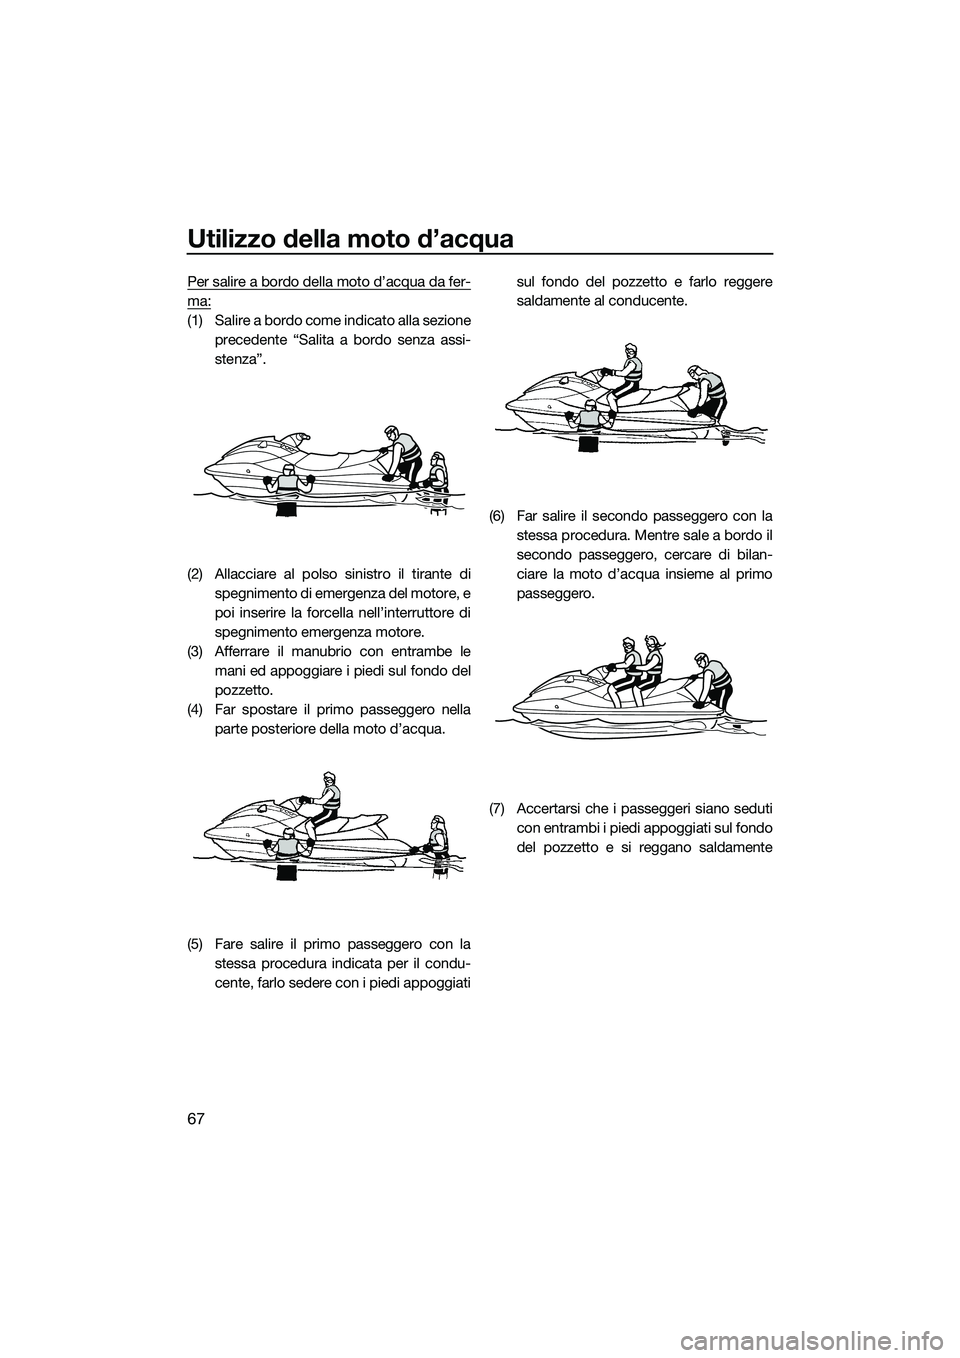 YAMAHA V1 2015  Manuale duso (in Italian) Utilizzo della moto d’acqua
67
Per salire a bordo della moto d’acqua da fer-
ma:
(1) Salire a bordo come indicato alla sezioneprecedente “Salita a bordo senza assi-
stenza”.
(2) Allacciare al 